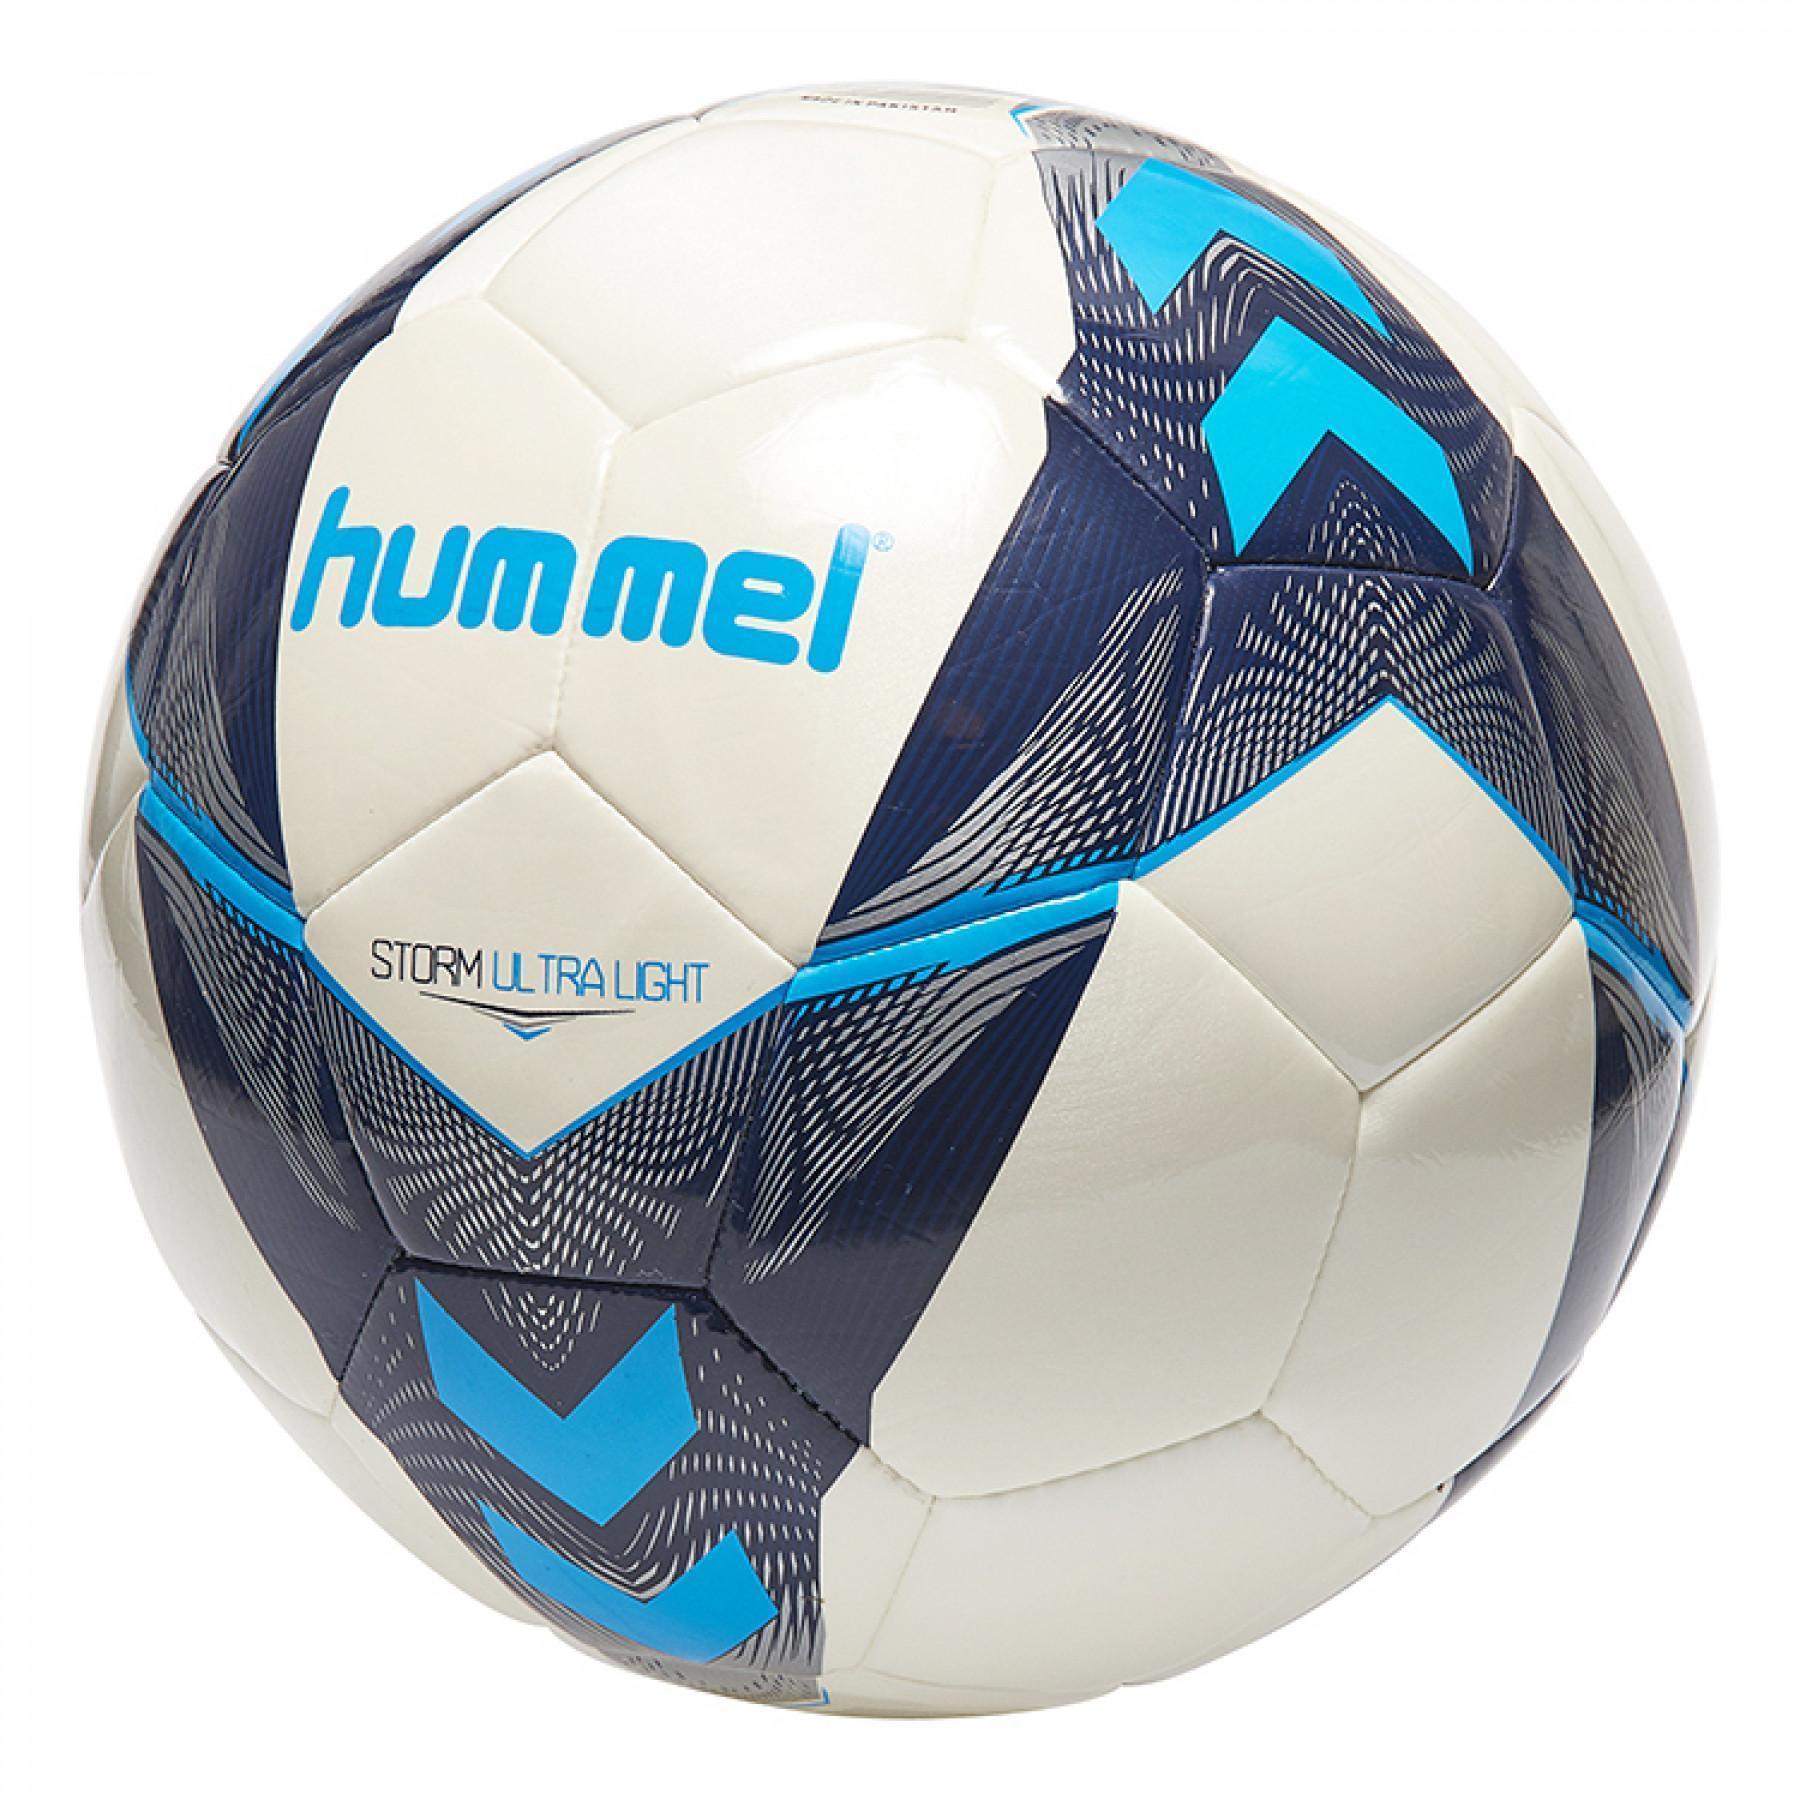 Piłka nożna Hummel storm ultra light fb